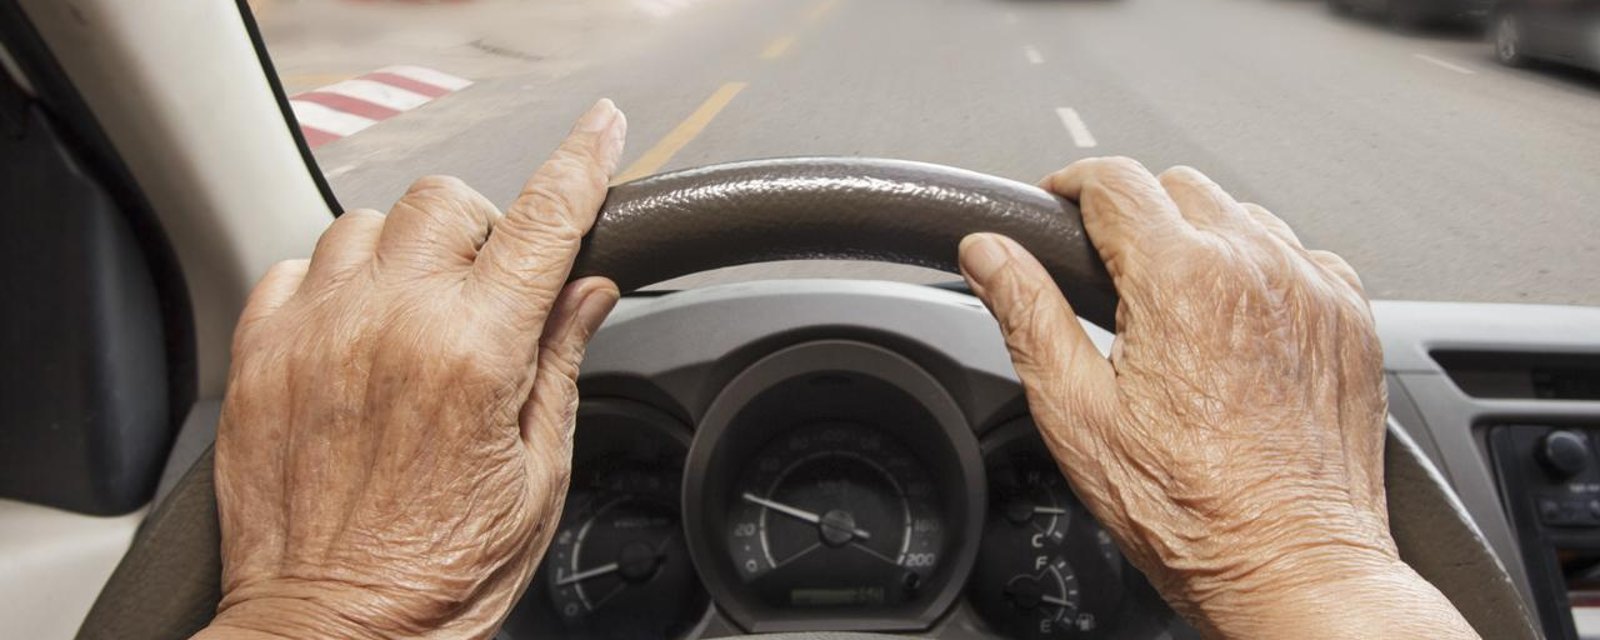 La SAAQ compte instaurer un important changement et des milliers de personnes ne pourront plus conduire.